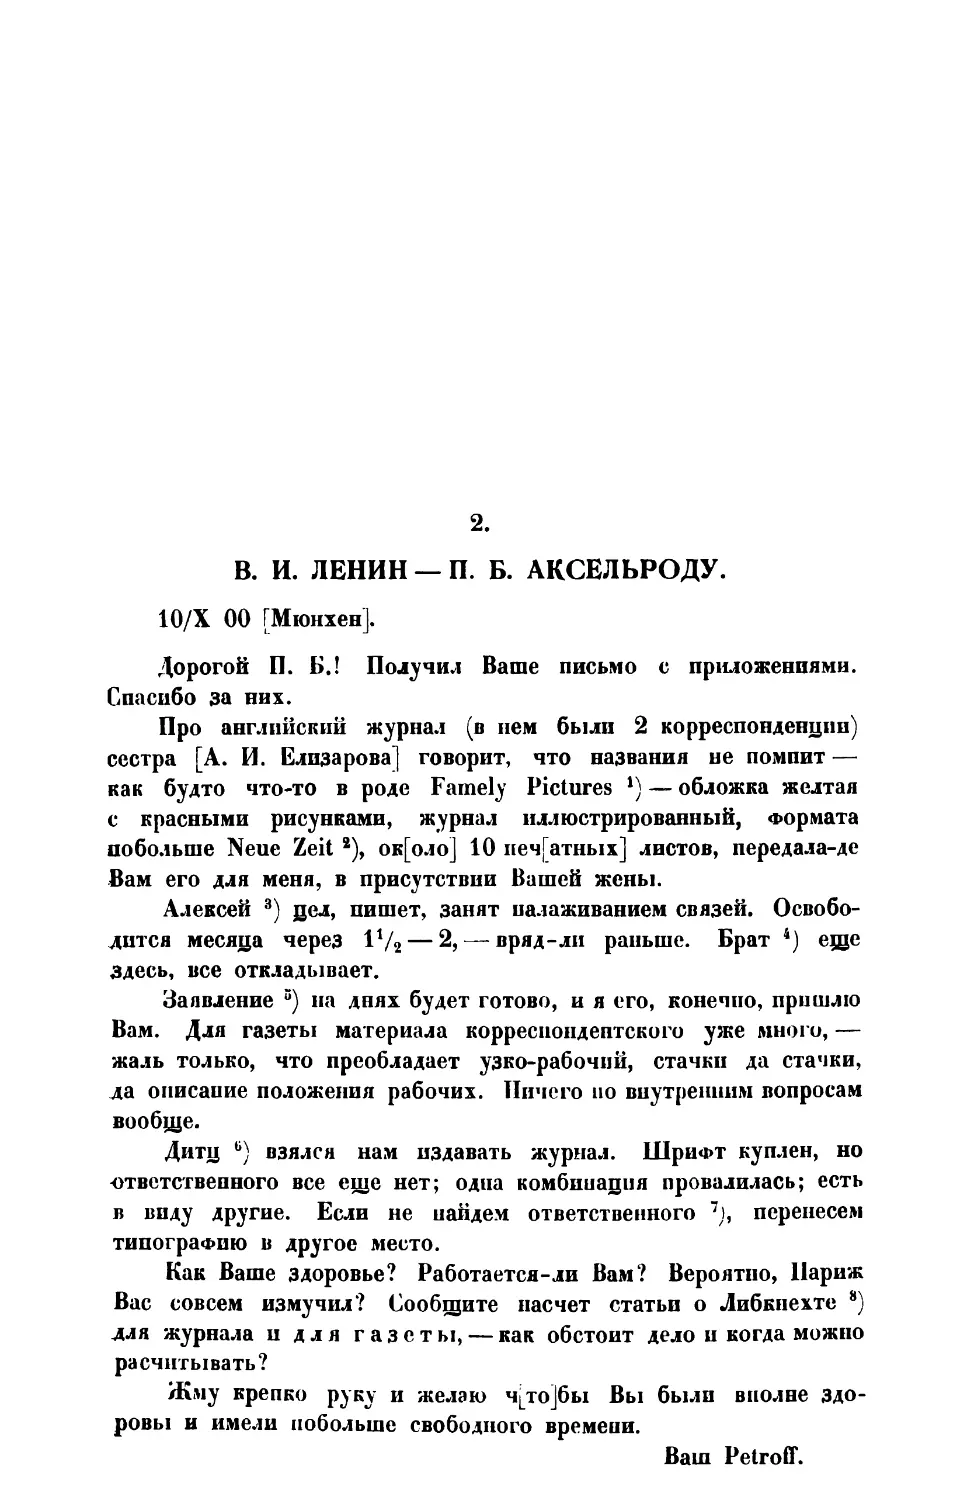 2. В. И. Ленин. — Письмо П. Б. Аксельроду от 10 X 1900 г.